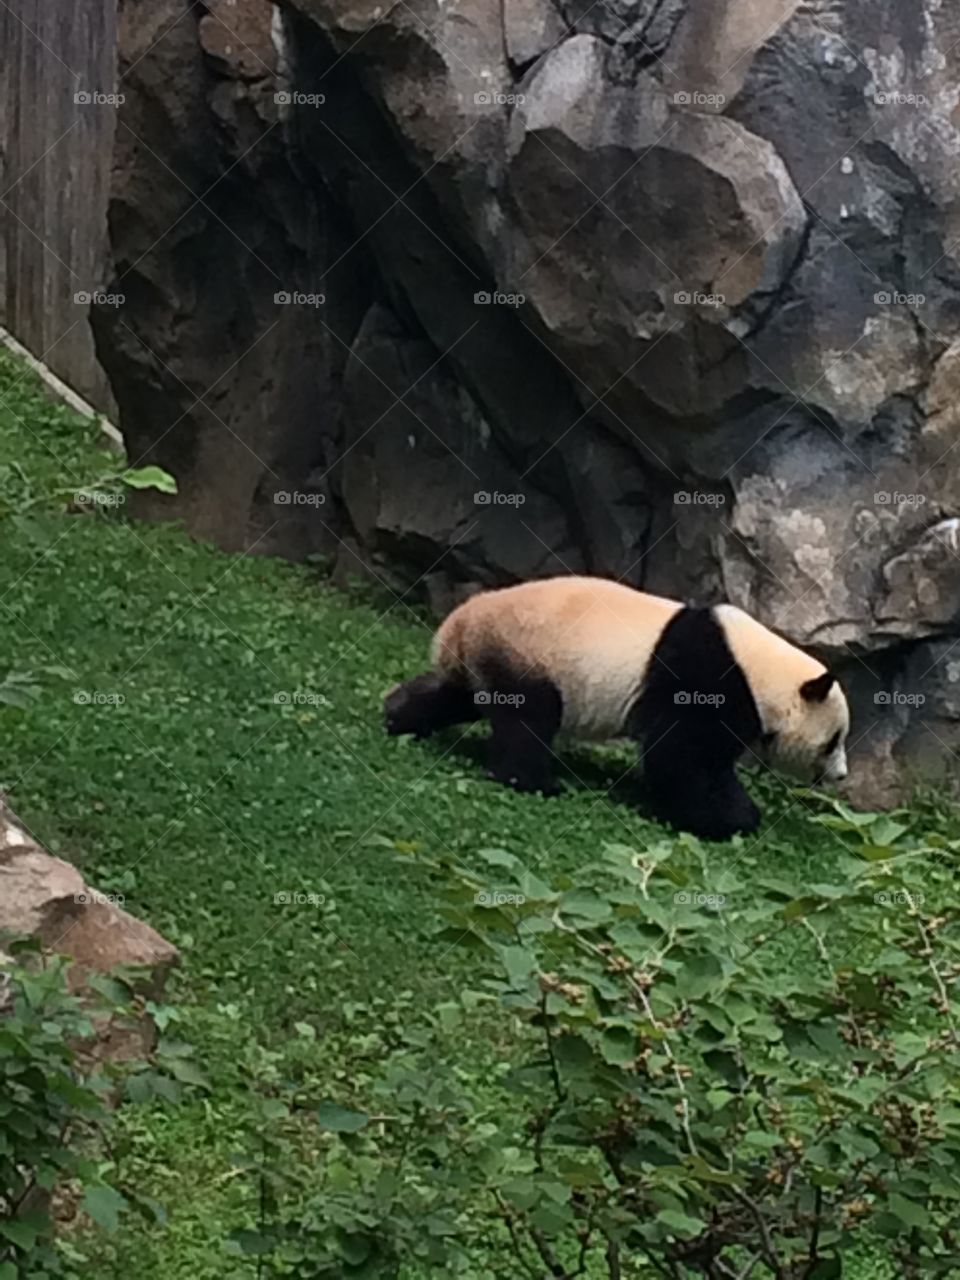 Panda - The National Zoo - Washington D.C.